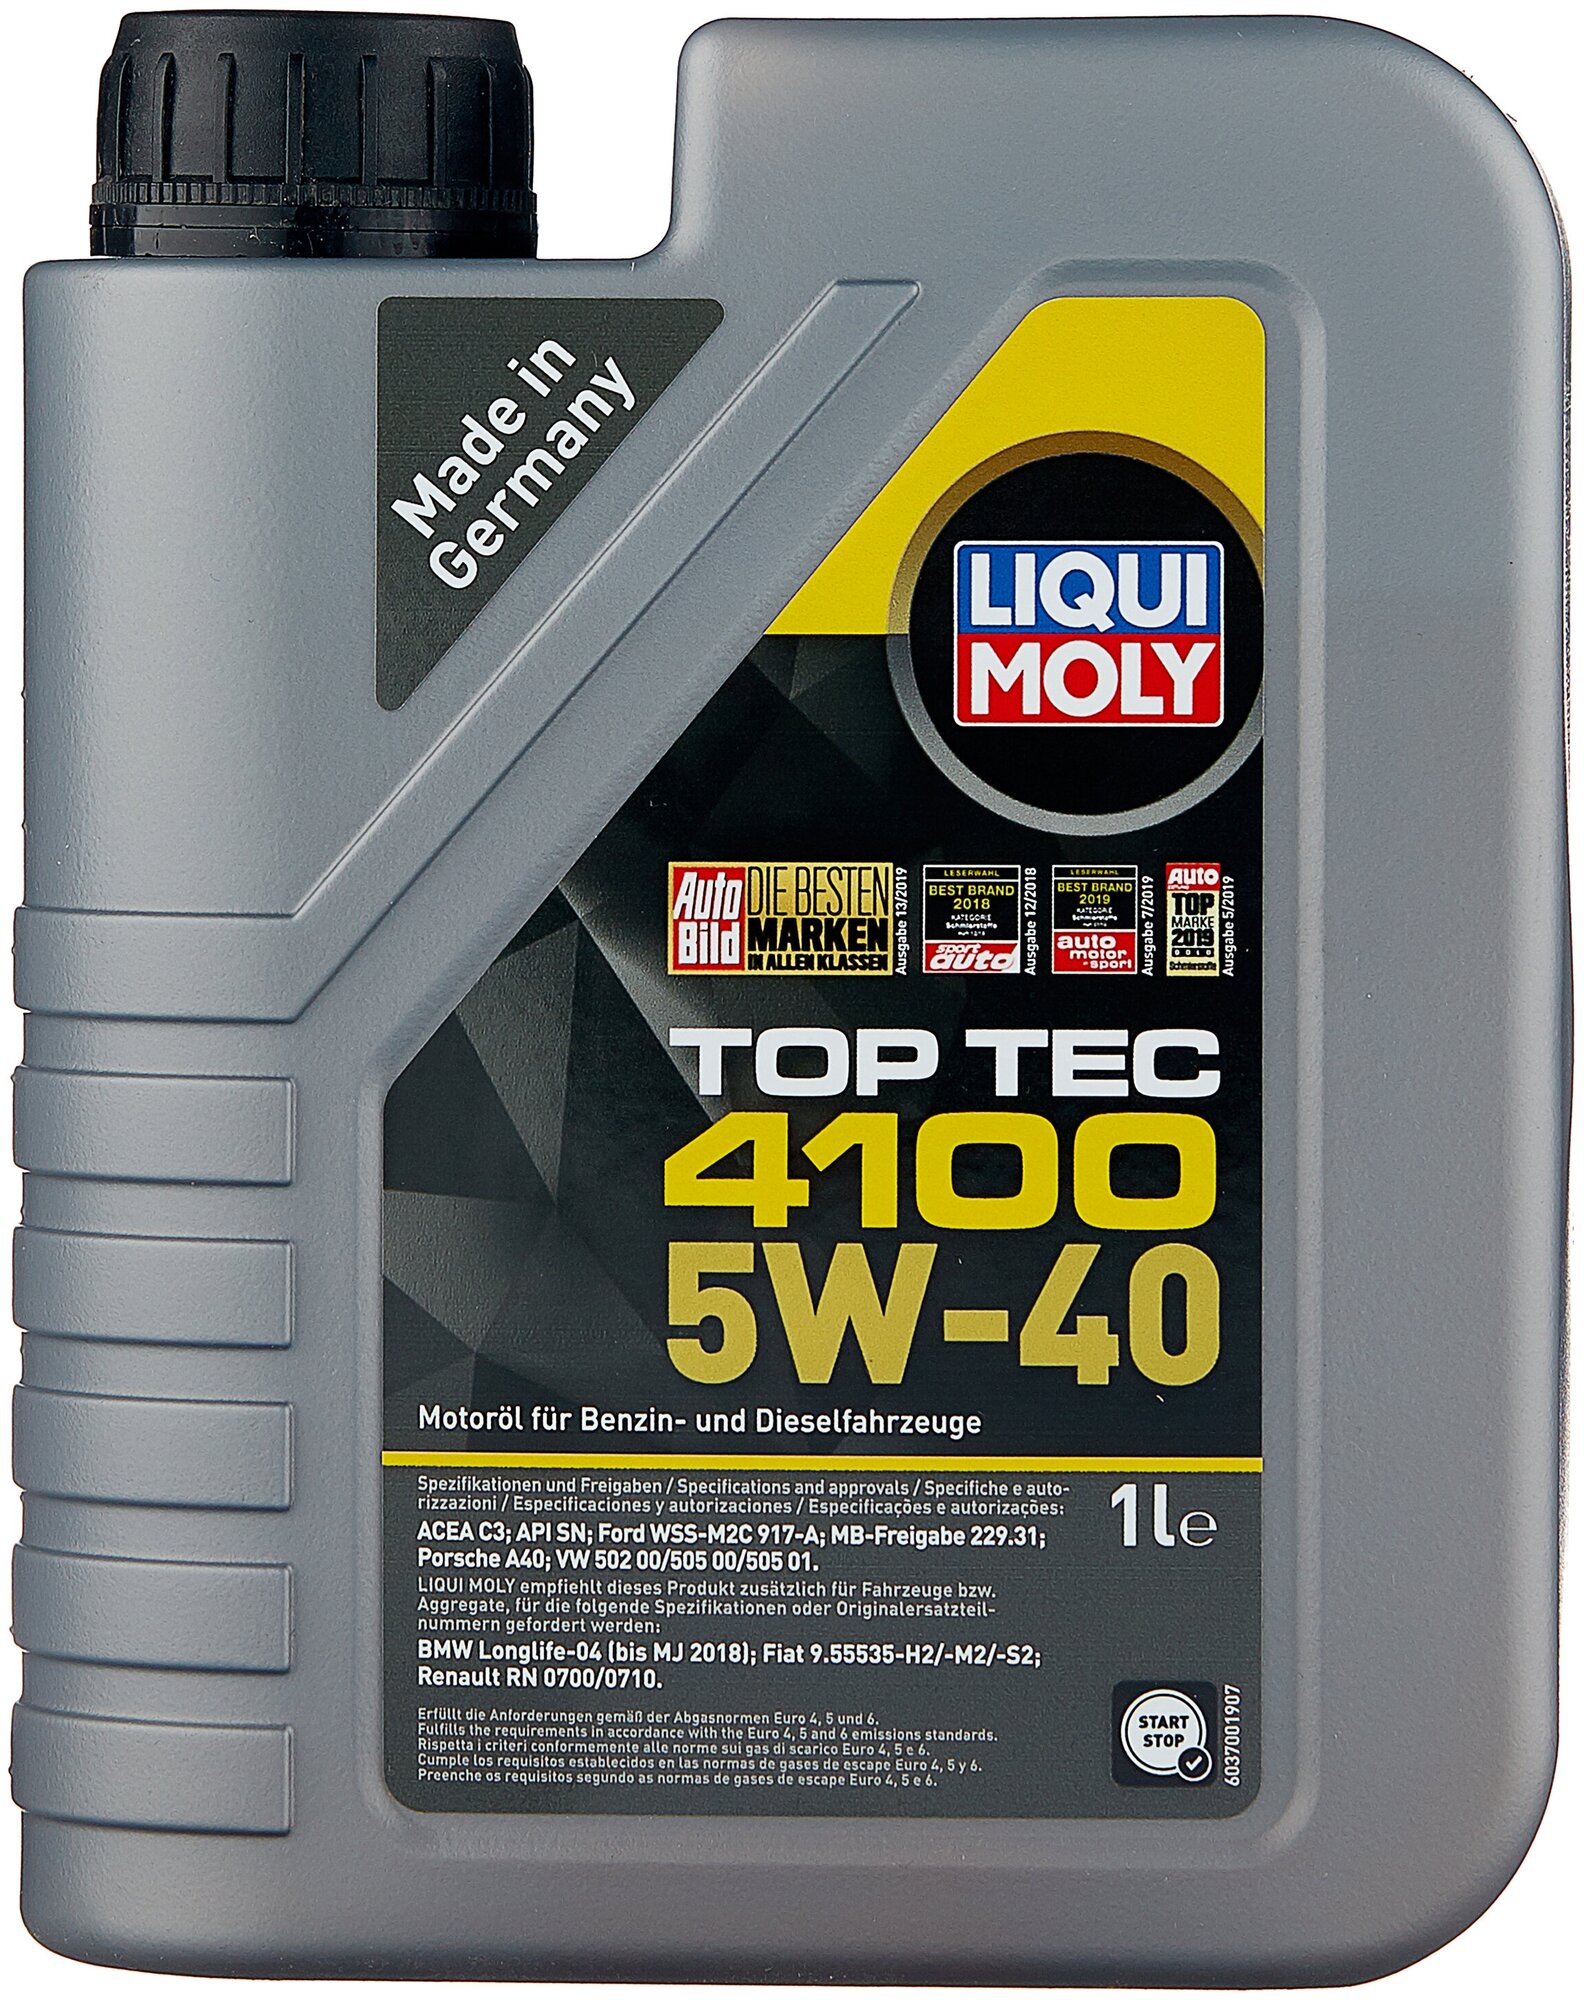    LIQUI MOLY Top Tec 4100 5W-40, 1 